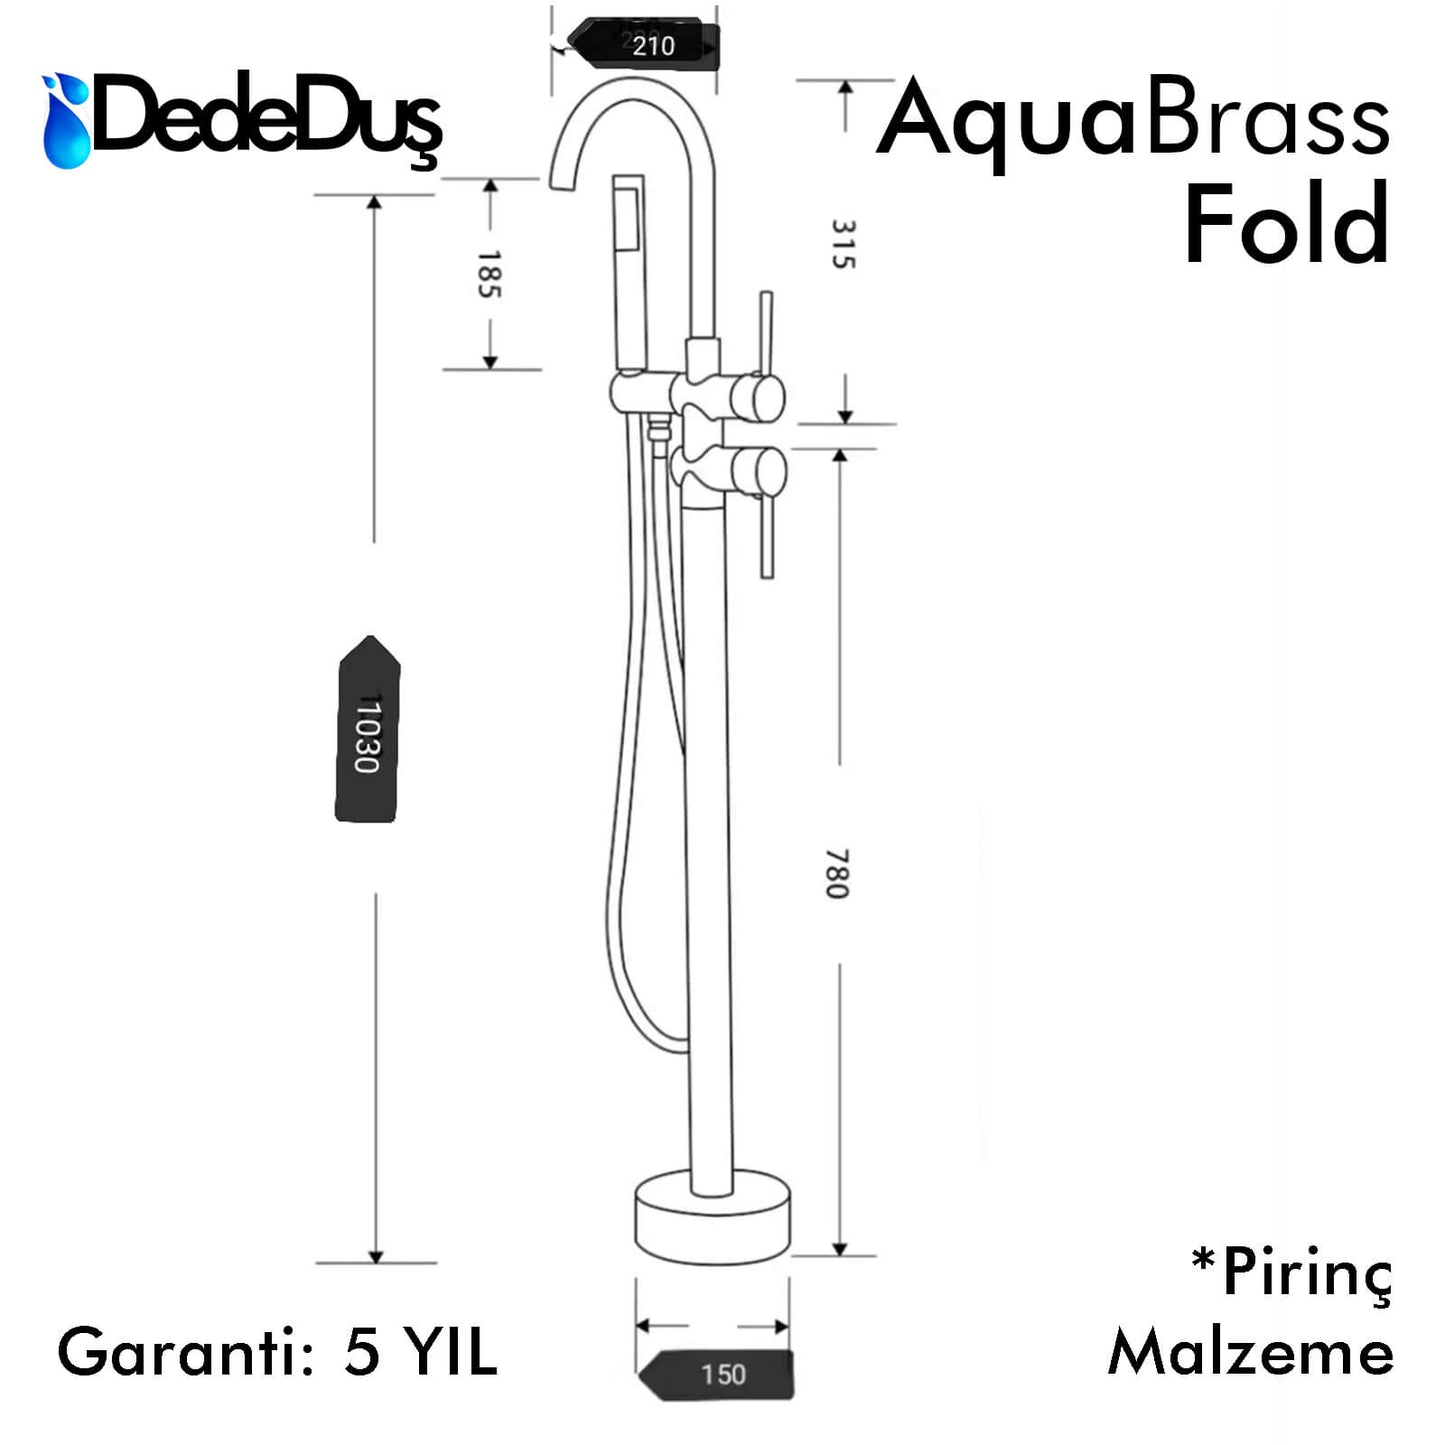 Yerden küvet bataryası, AquaBrass Fold ölçüleri